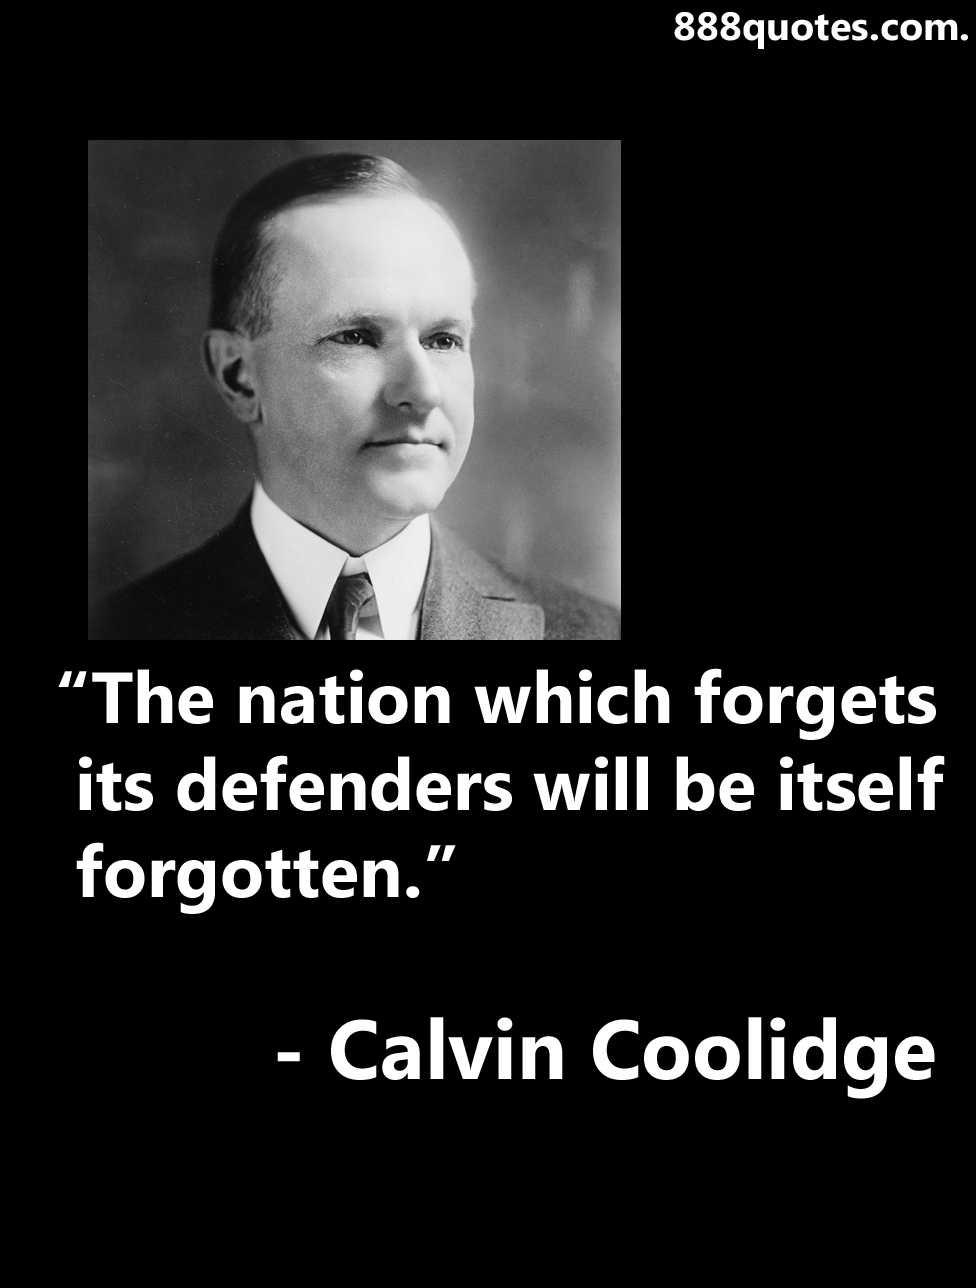 Calvin Coolidge | 888quotes.com